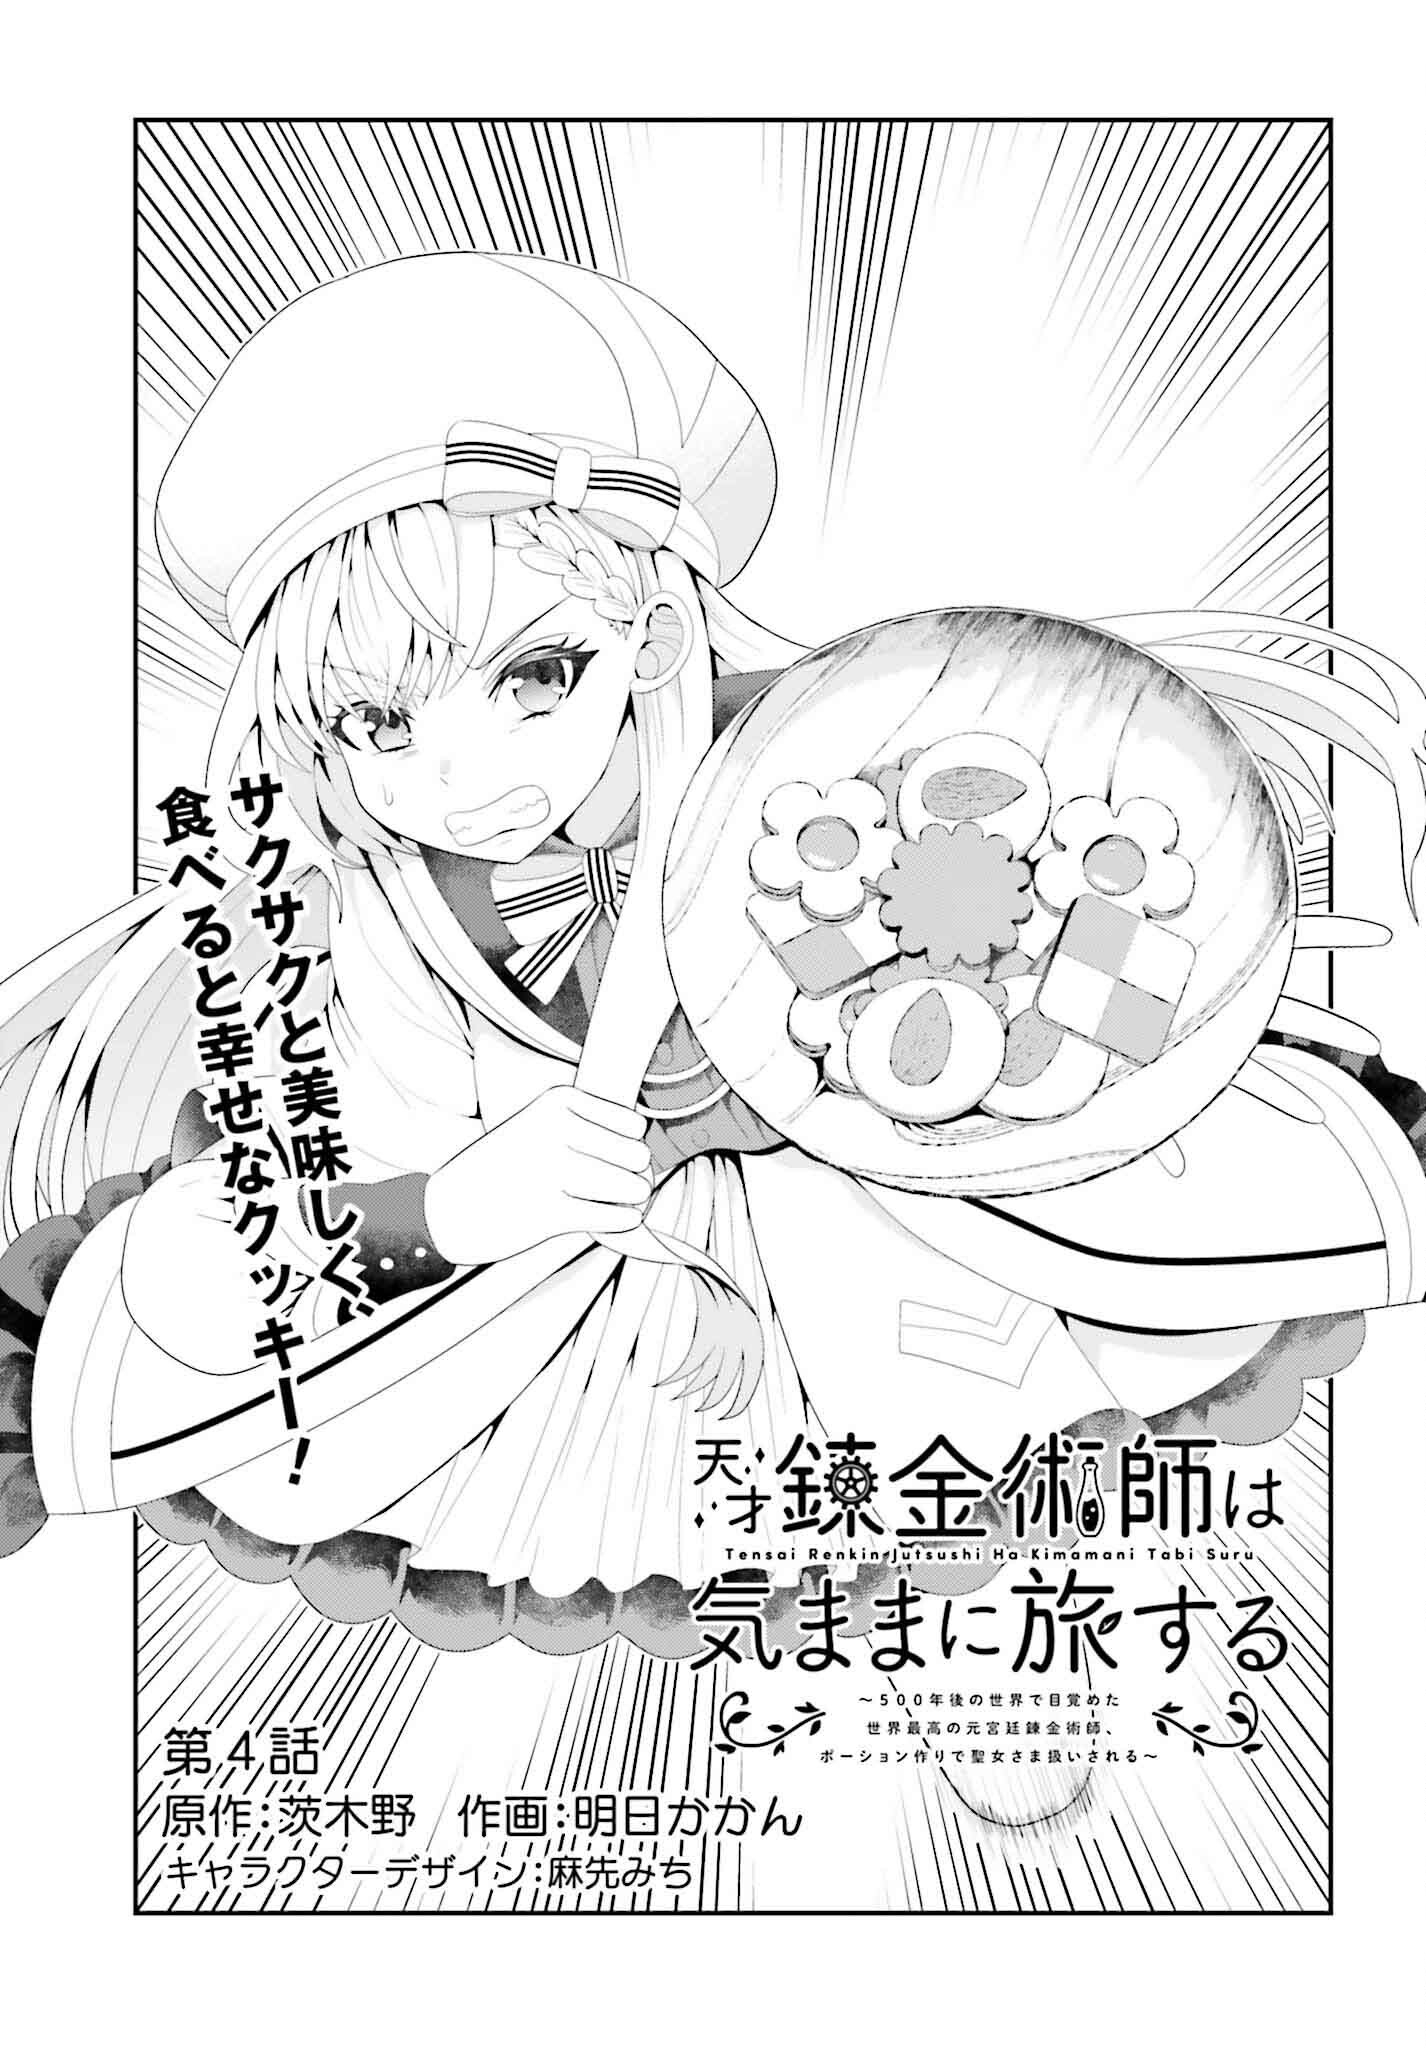 Tensai Rekinjutsushi wa Kimama ni Tabi suru - Chapter 4 - Page 1